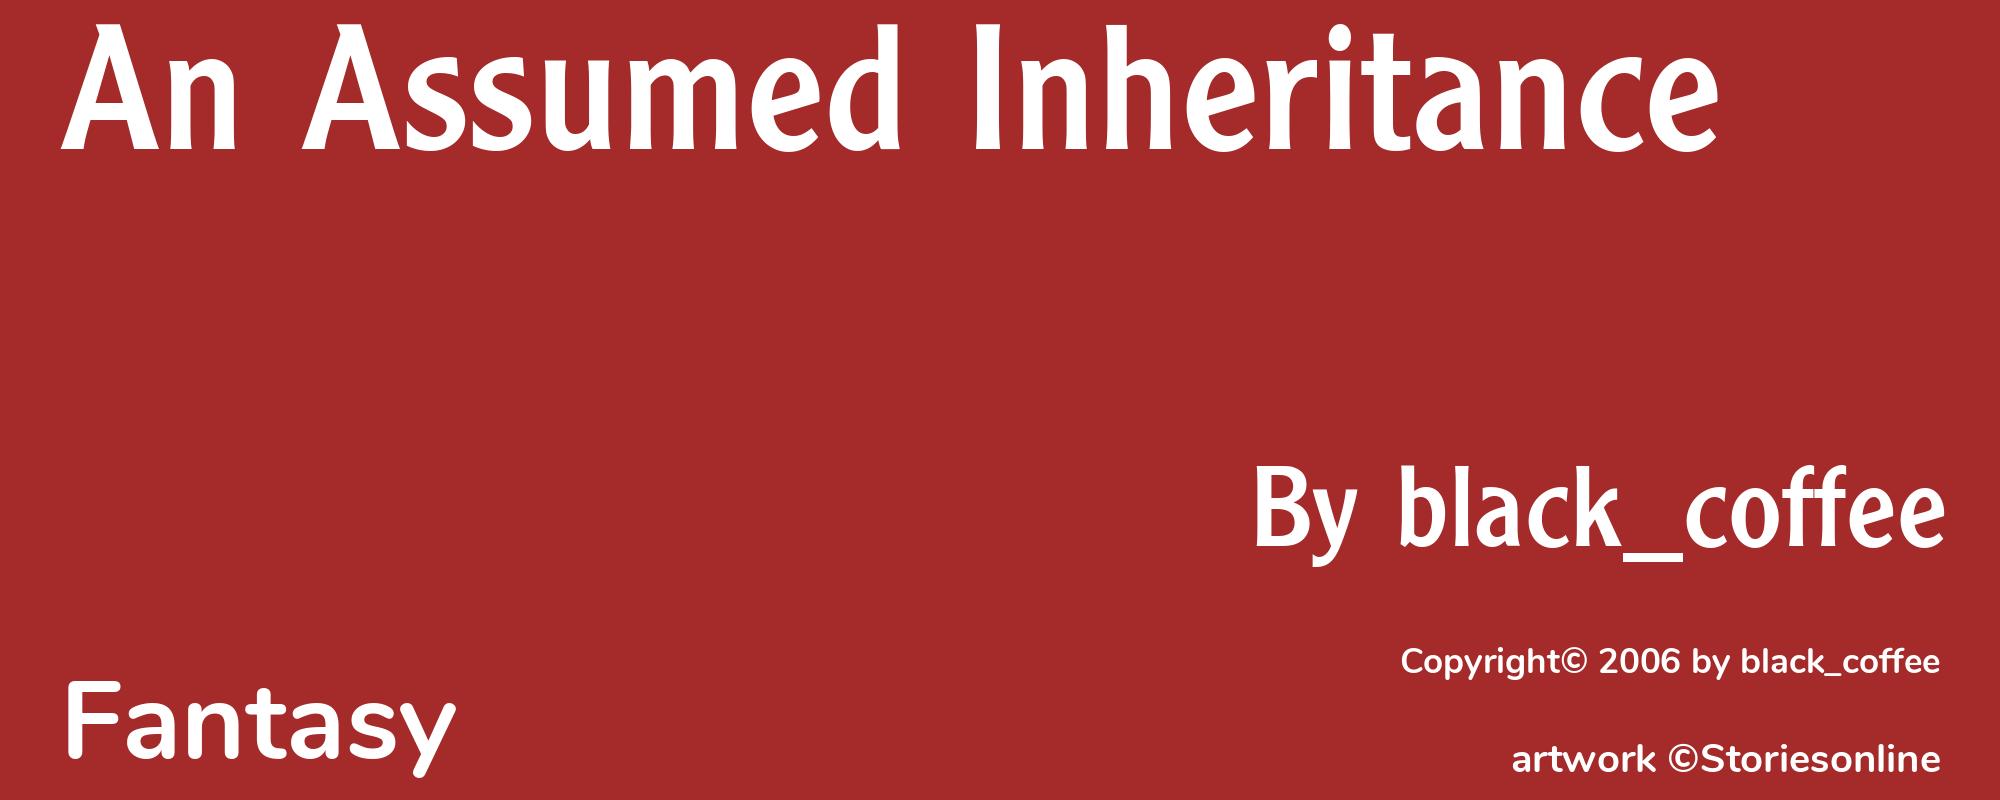 An Assumed Inheritance - Cover